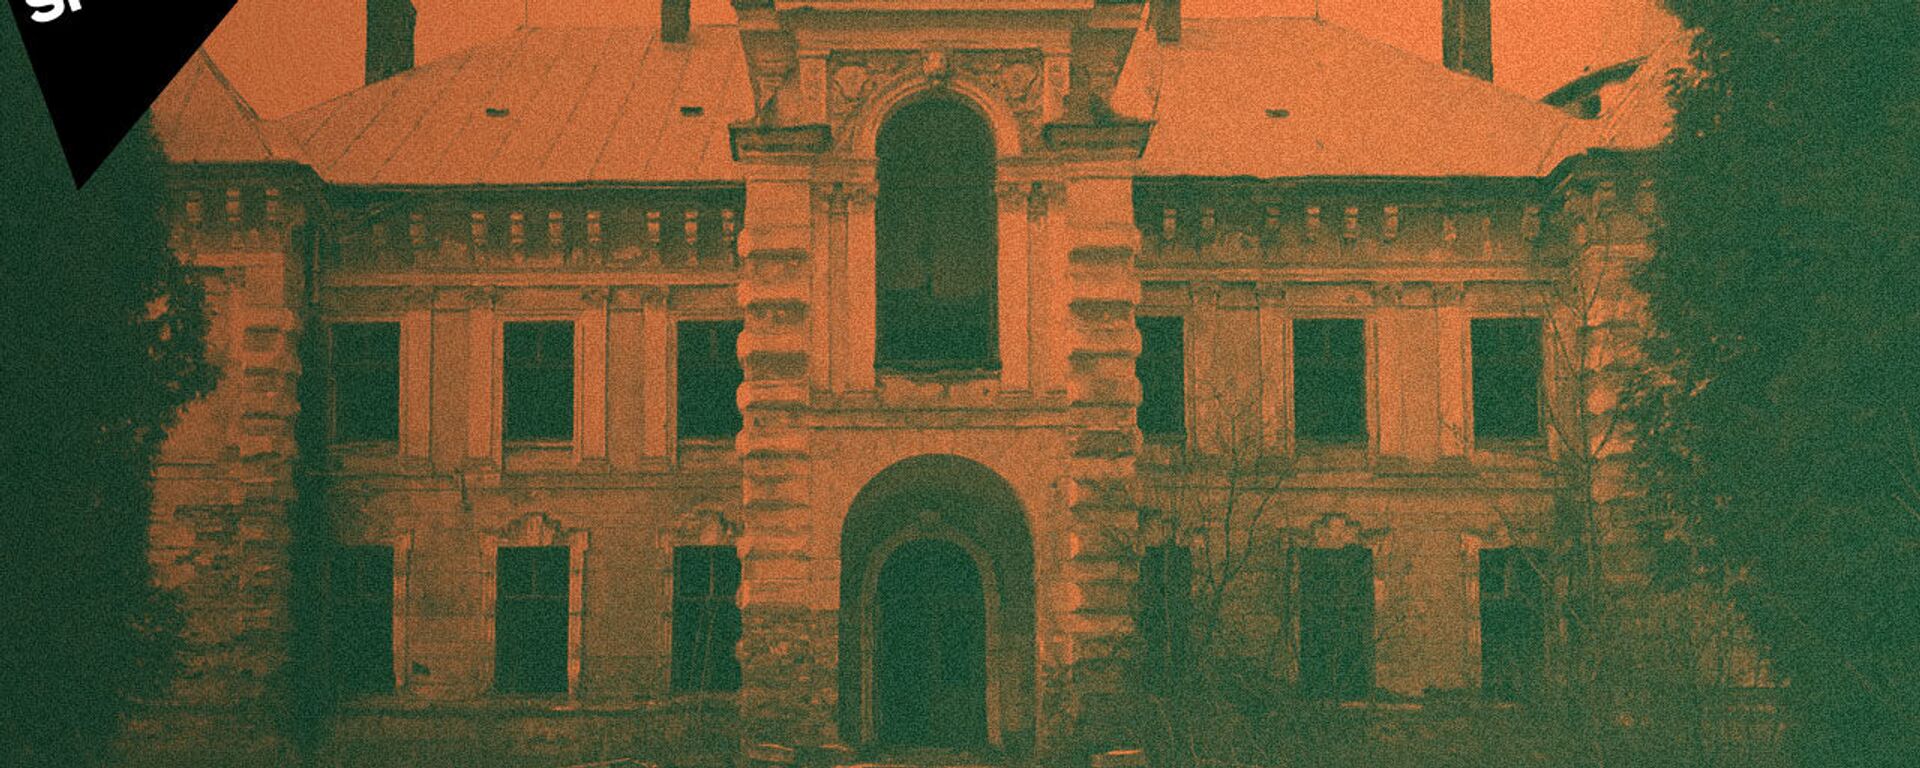 Как на Украине разрушаются старинные дворцы и усадьбы - Sputnik Латвия, 1920, 20.02.2021